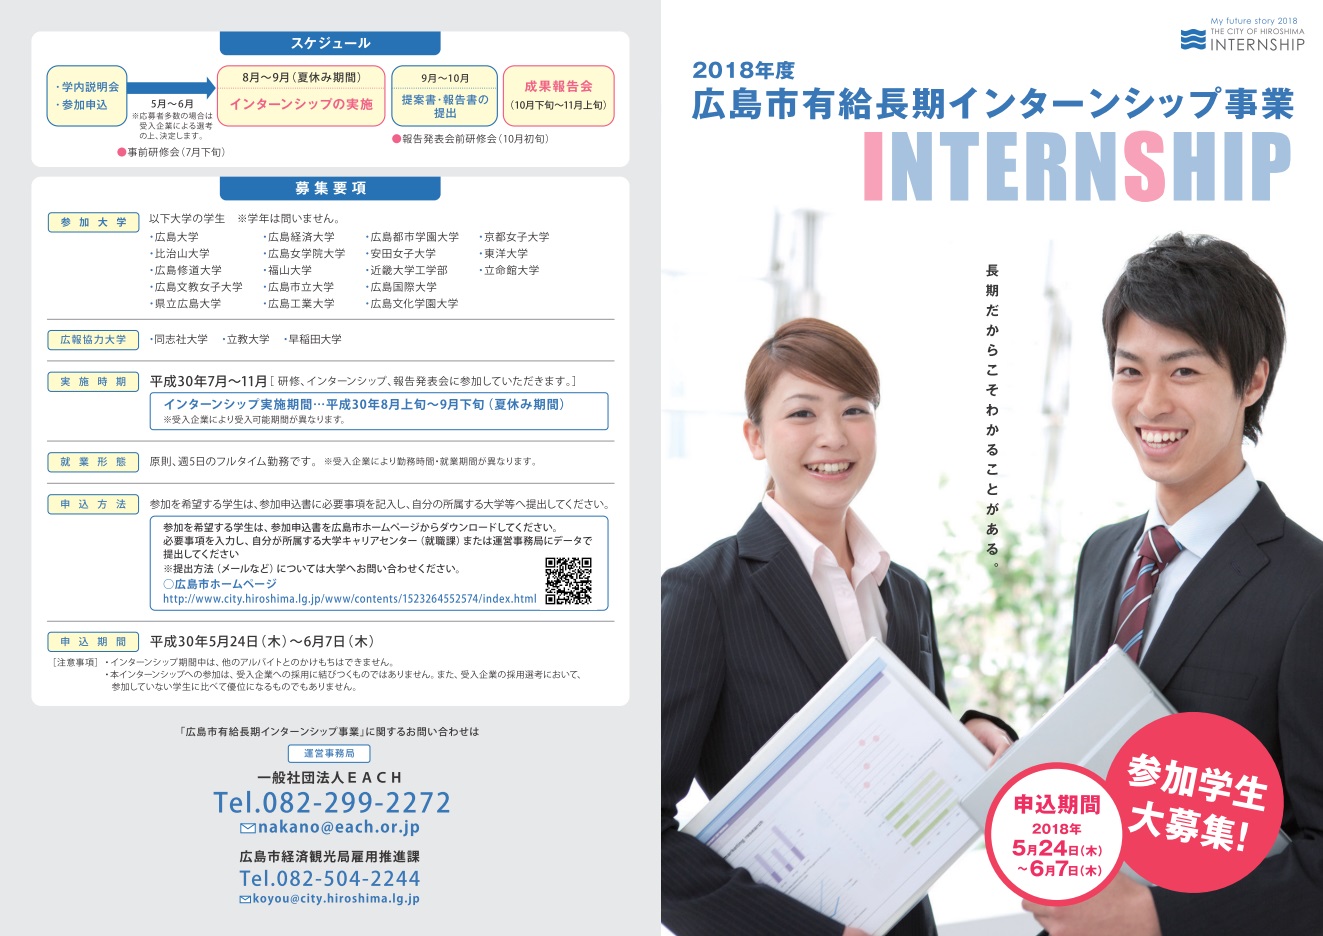 広島市有給長期インターンシップ事業説明会 | 移住関連イベント情報